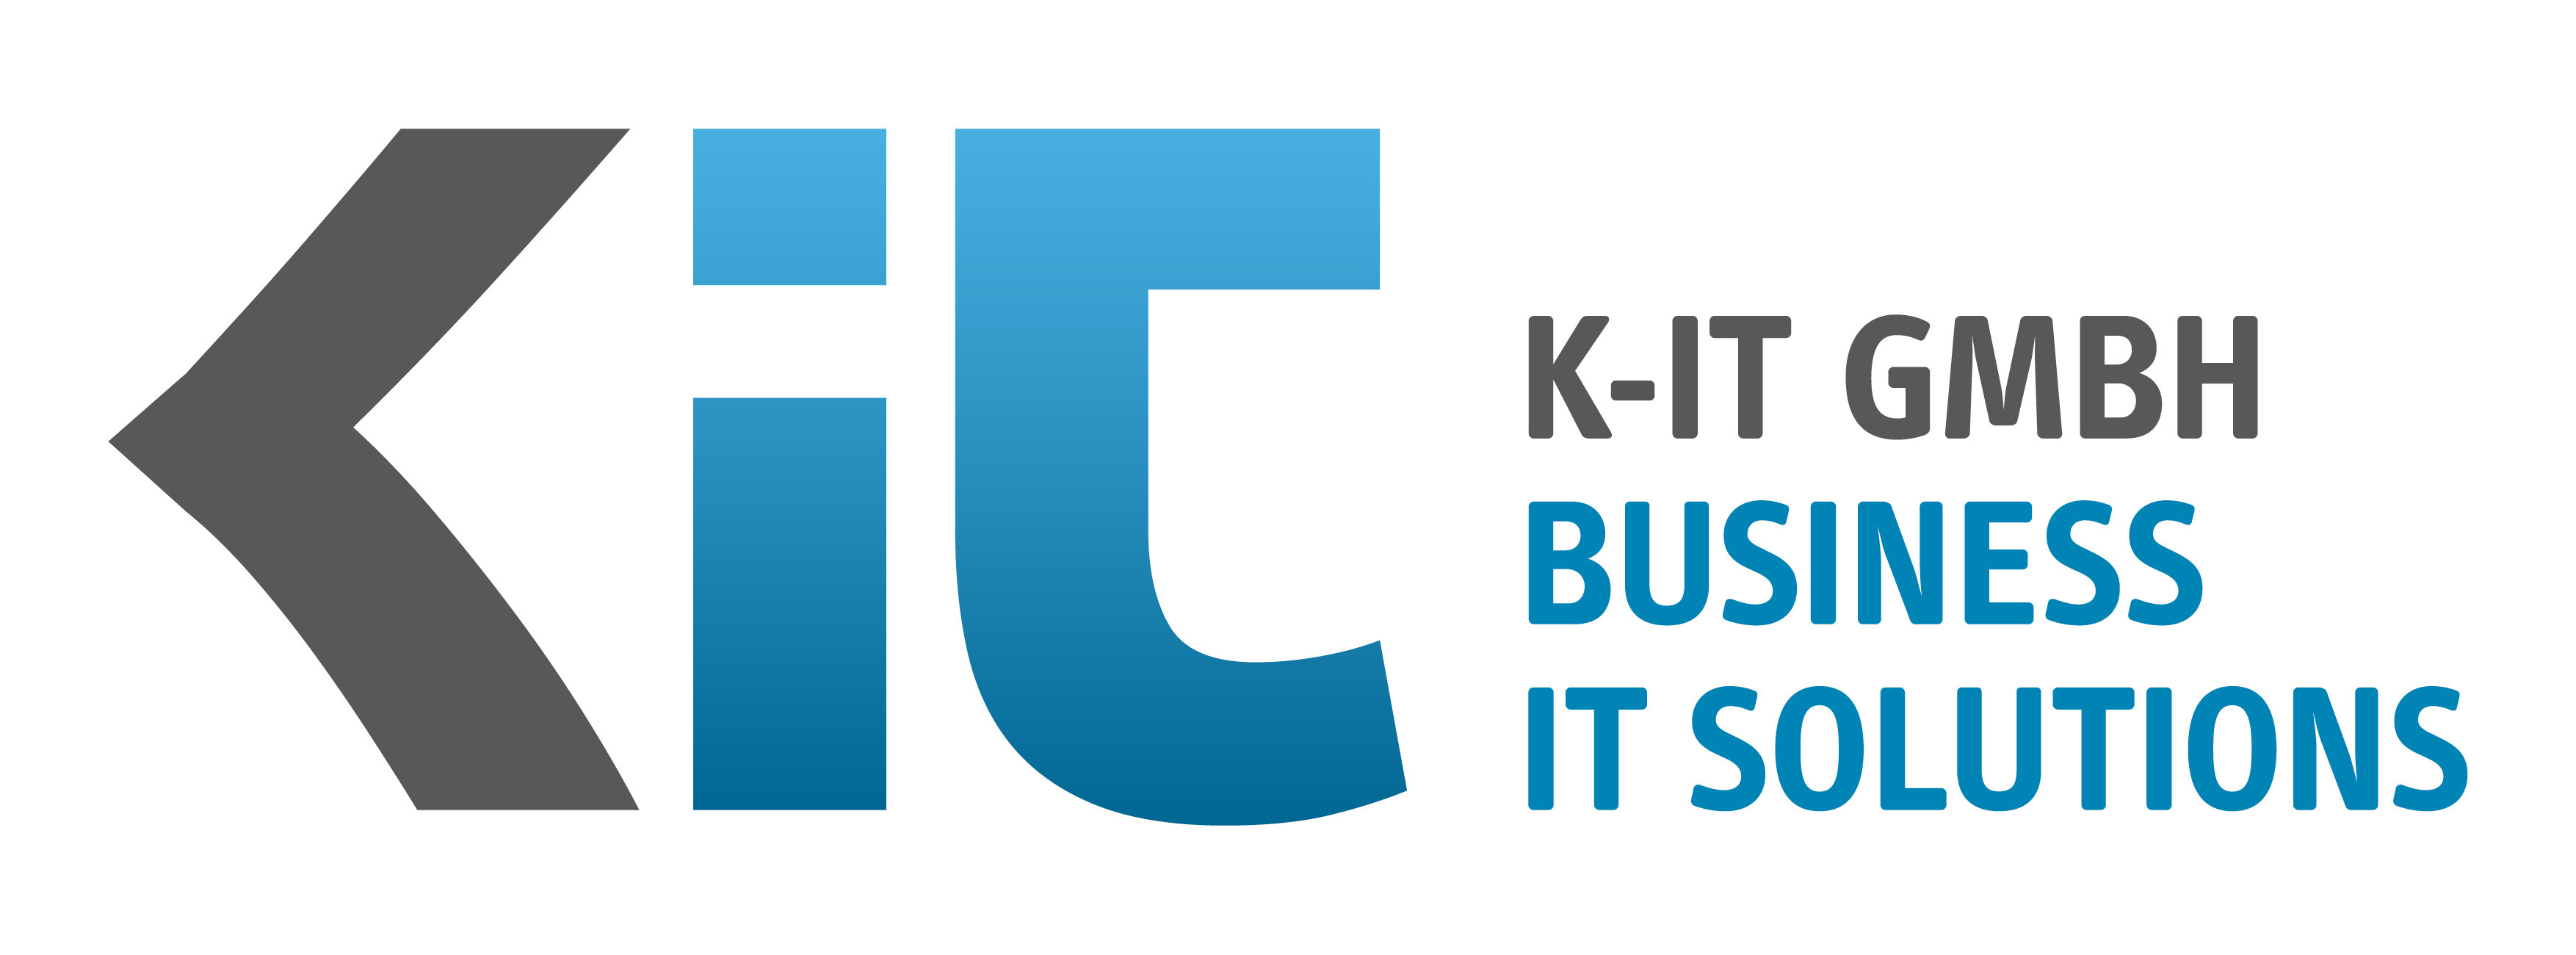 K-IT GmbH